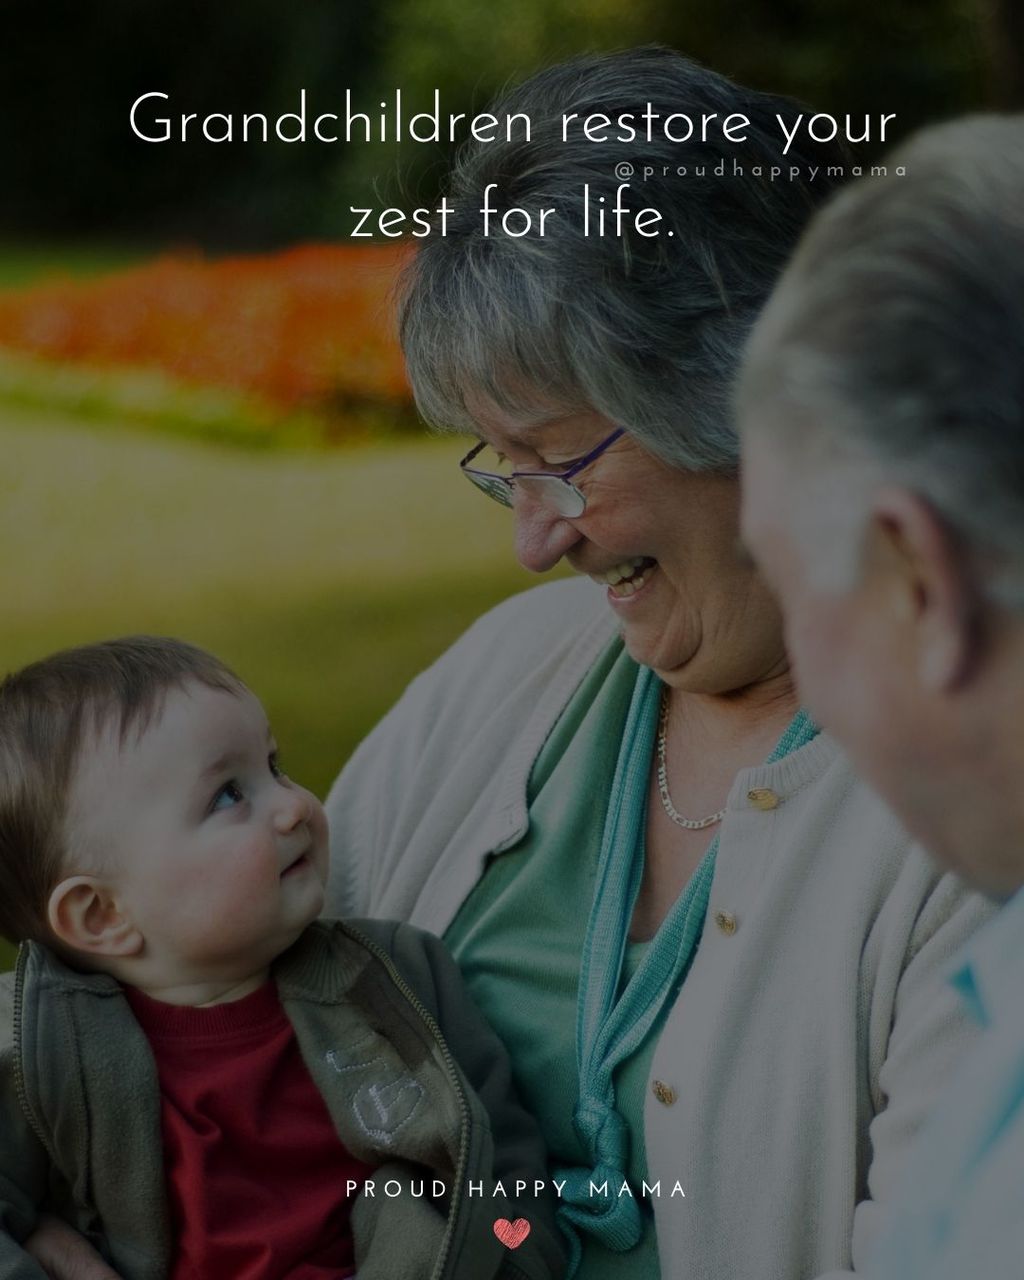 Quotes for Grandchildren - Grandchildren restore your zest for life.